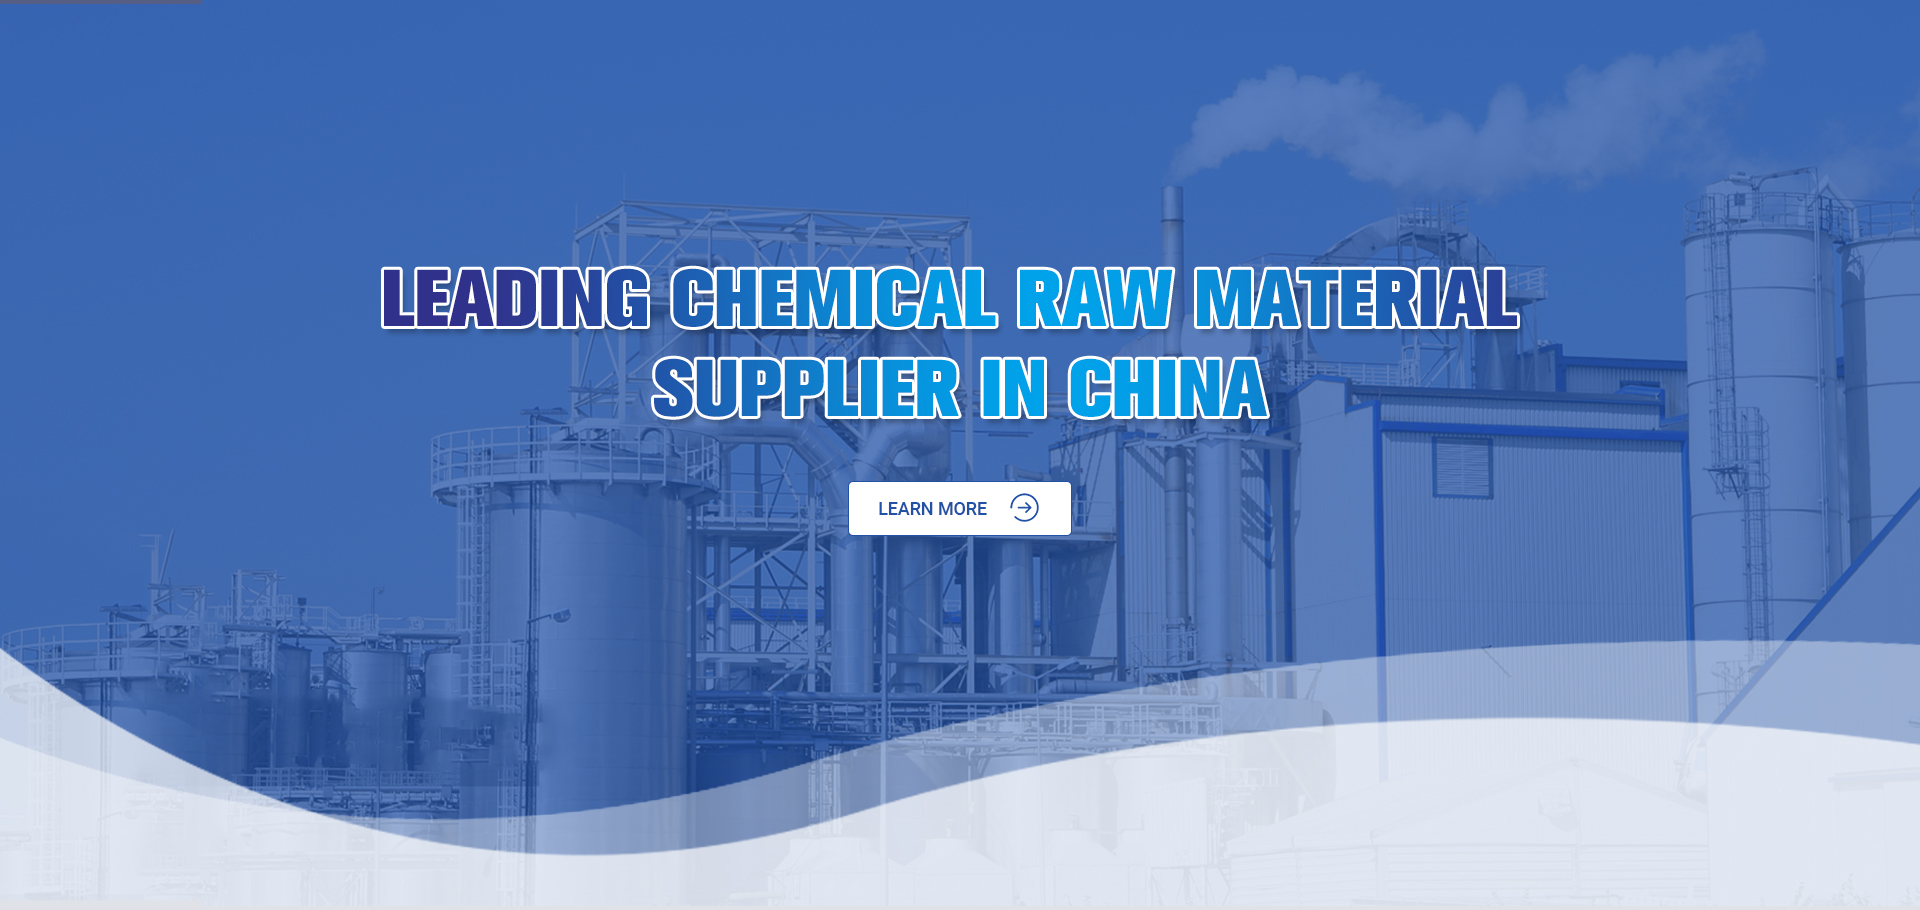 Nhà cung cấp nguyên liệu hóa chất hàng đầu tại Trung Quốc